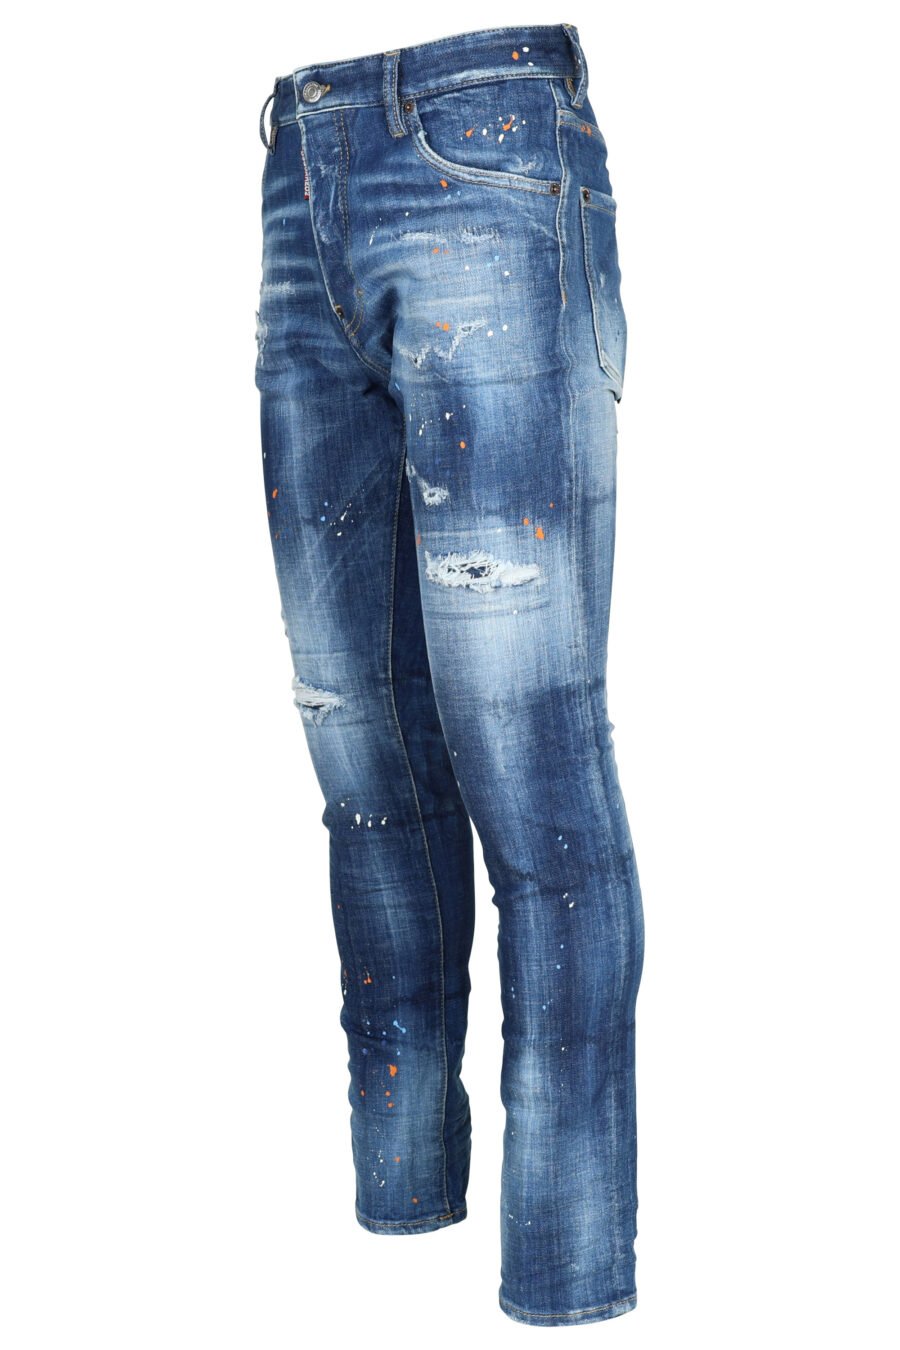 Pantalón vaquero azul desgastado "cool guy" y rotos - 8054148473310 1